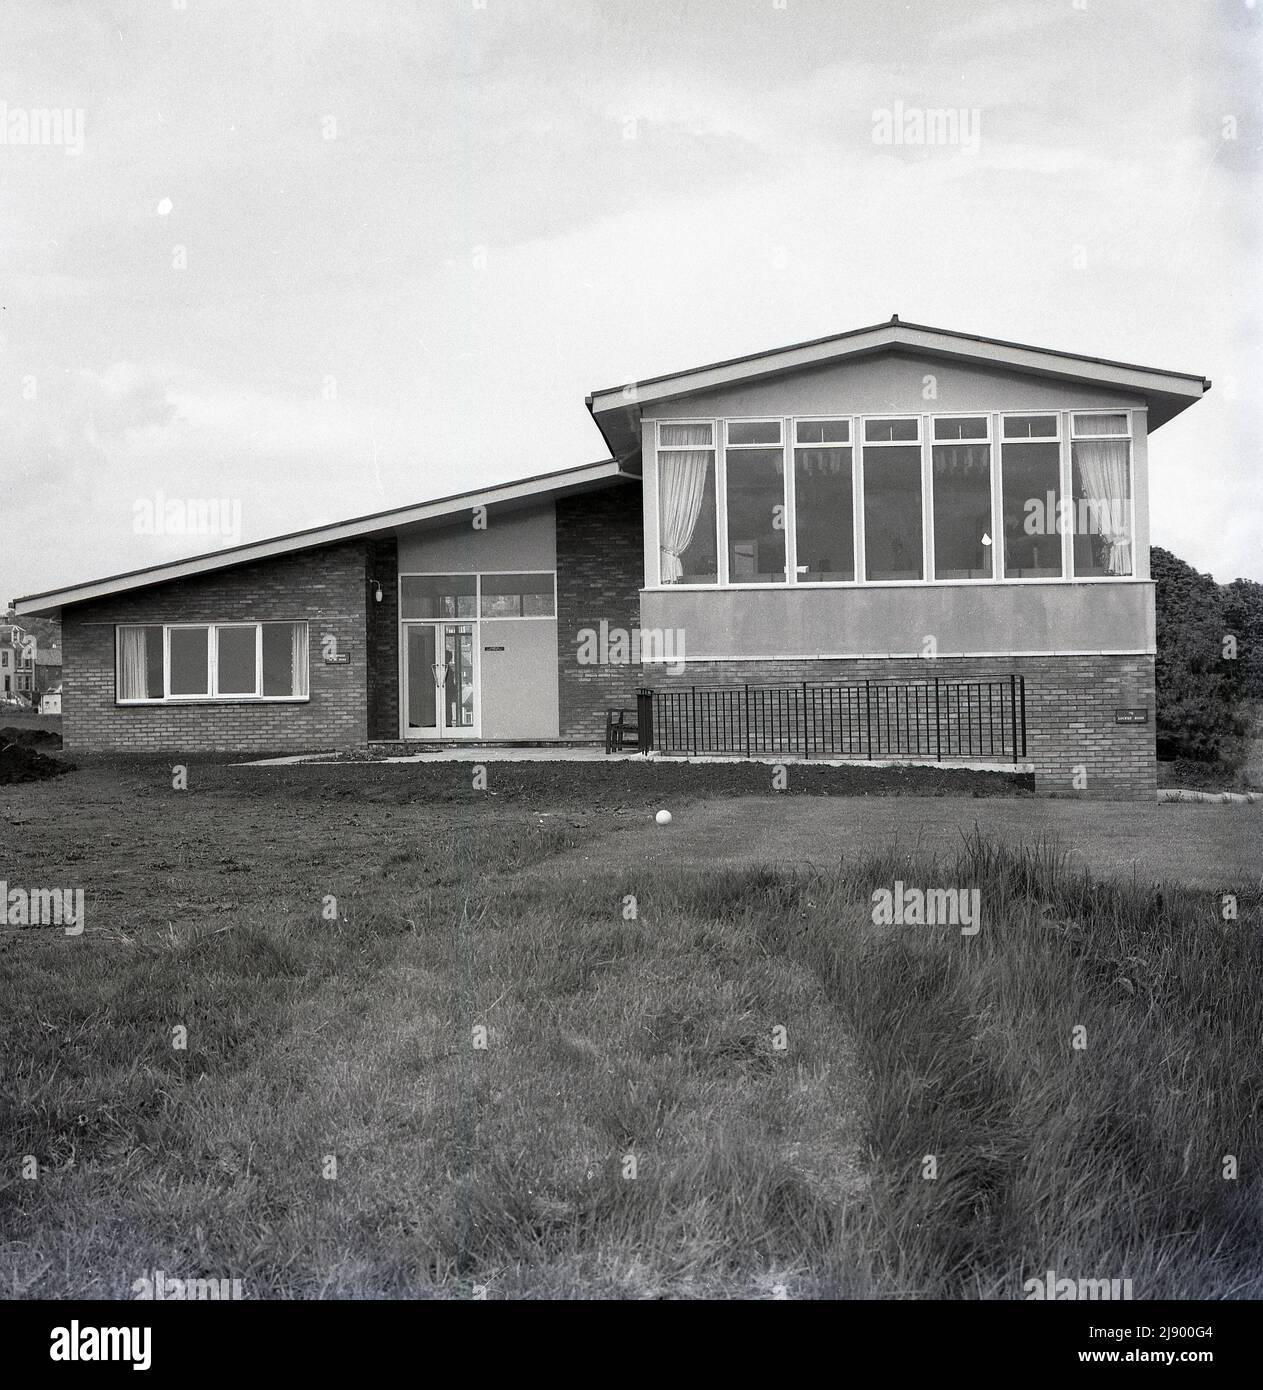 1960s, historique, nouveau clubhouse, Aberdour Golf Club, Fife, Écosse. Le club de golf a été établi en 1896 sur un parc par le Firth of Forth et avait un pavillon d'un étage construit en 1920s. Au milieu de l'année 60s, il a été démoli et un nouveau pavillon vu ici a été construit dans un style architectural « moderne » commun à l'époque. Banque D'Images